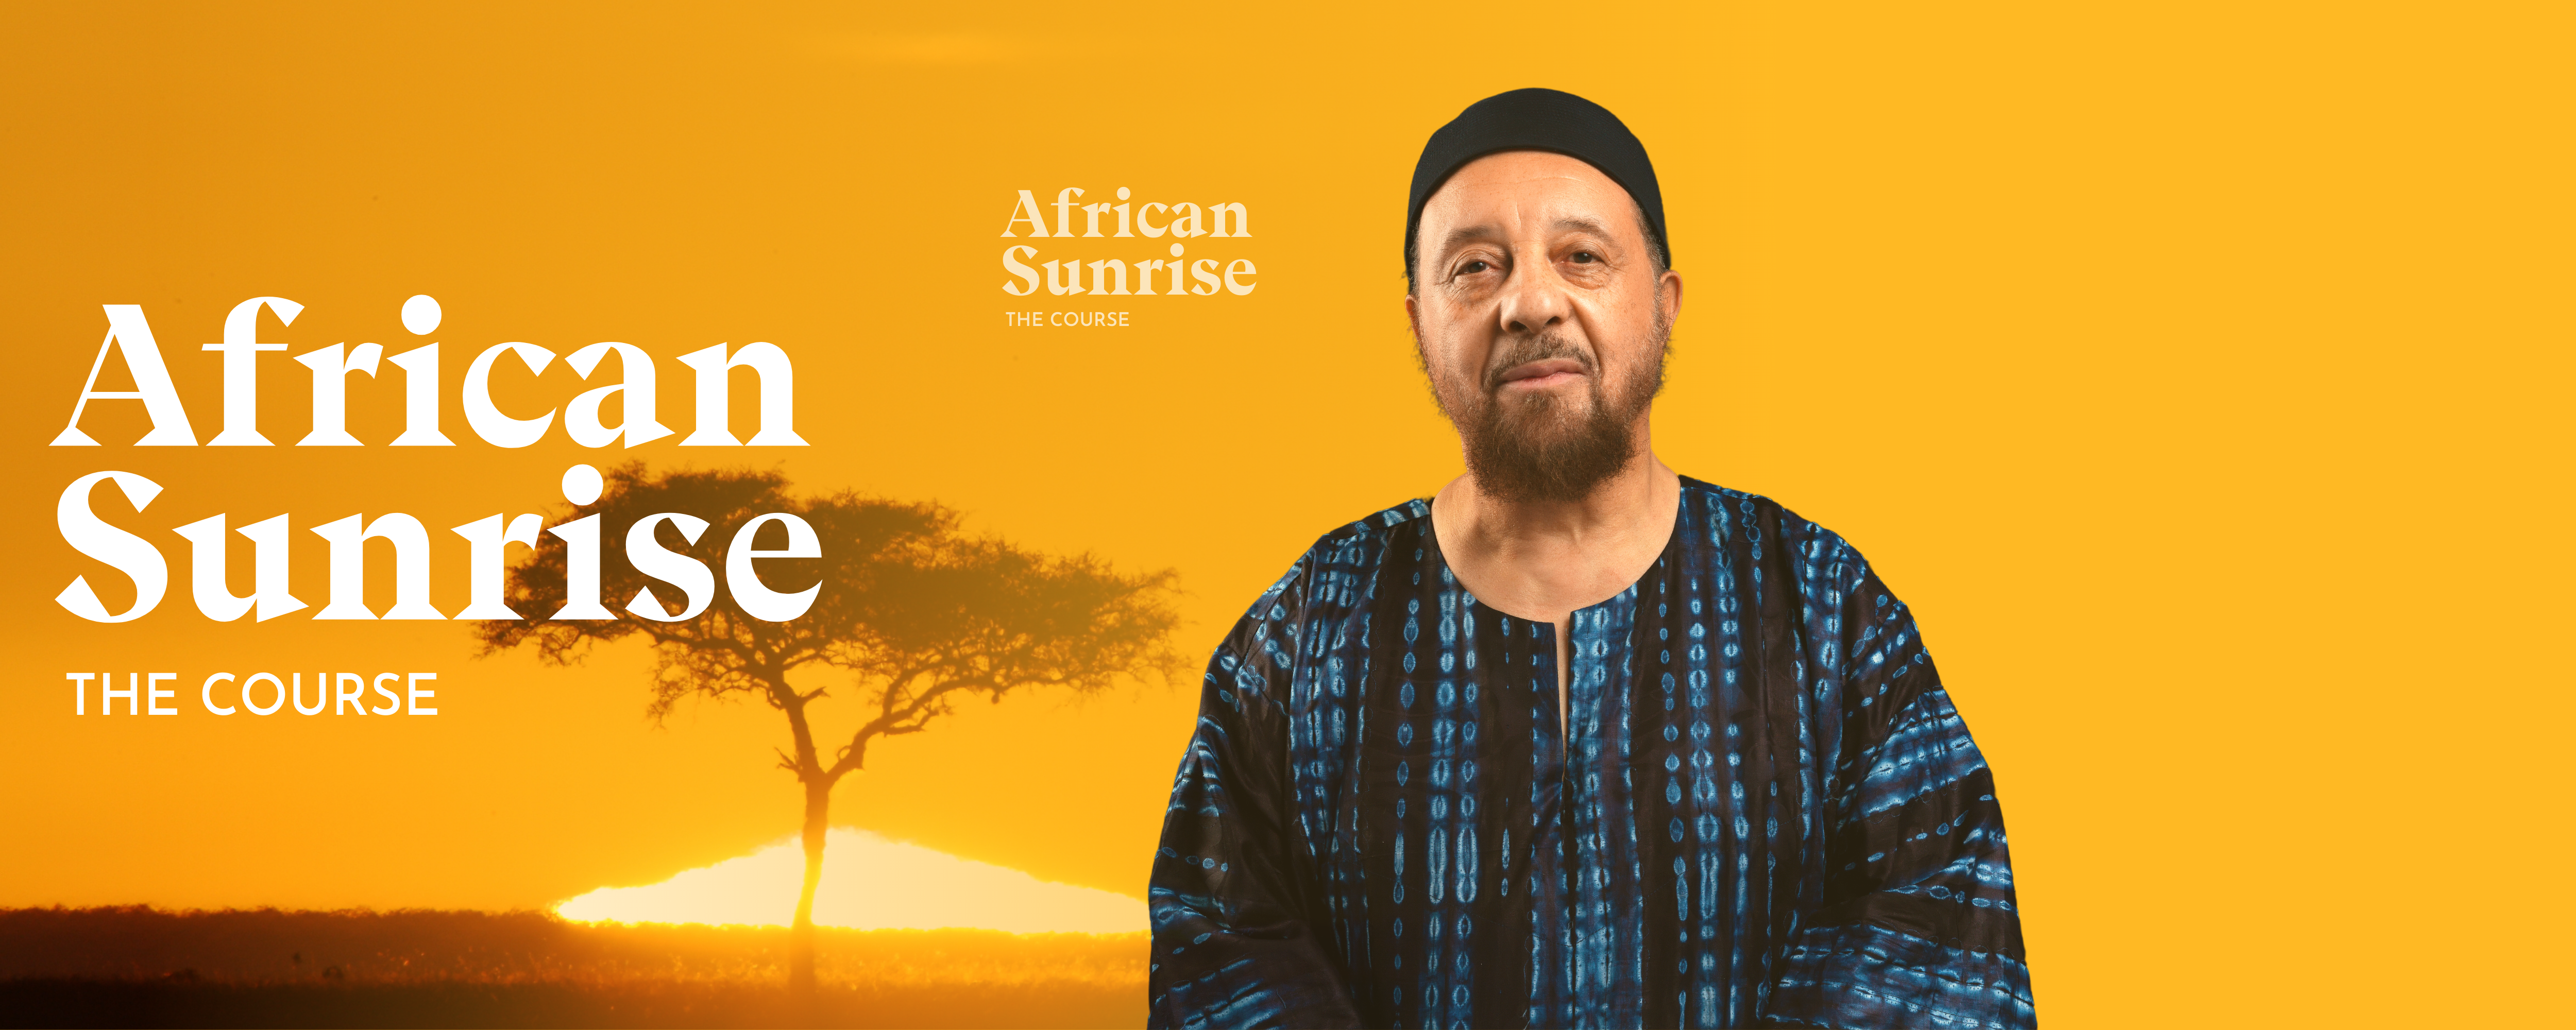 African Sunrise Course - Abdullah Hakim Quick 